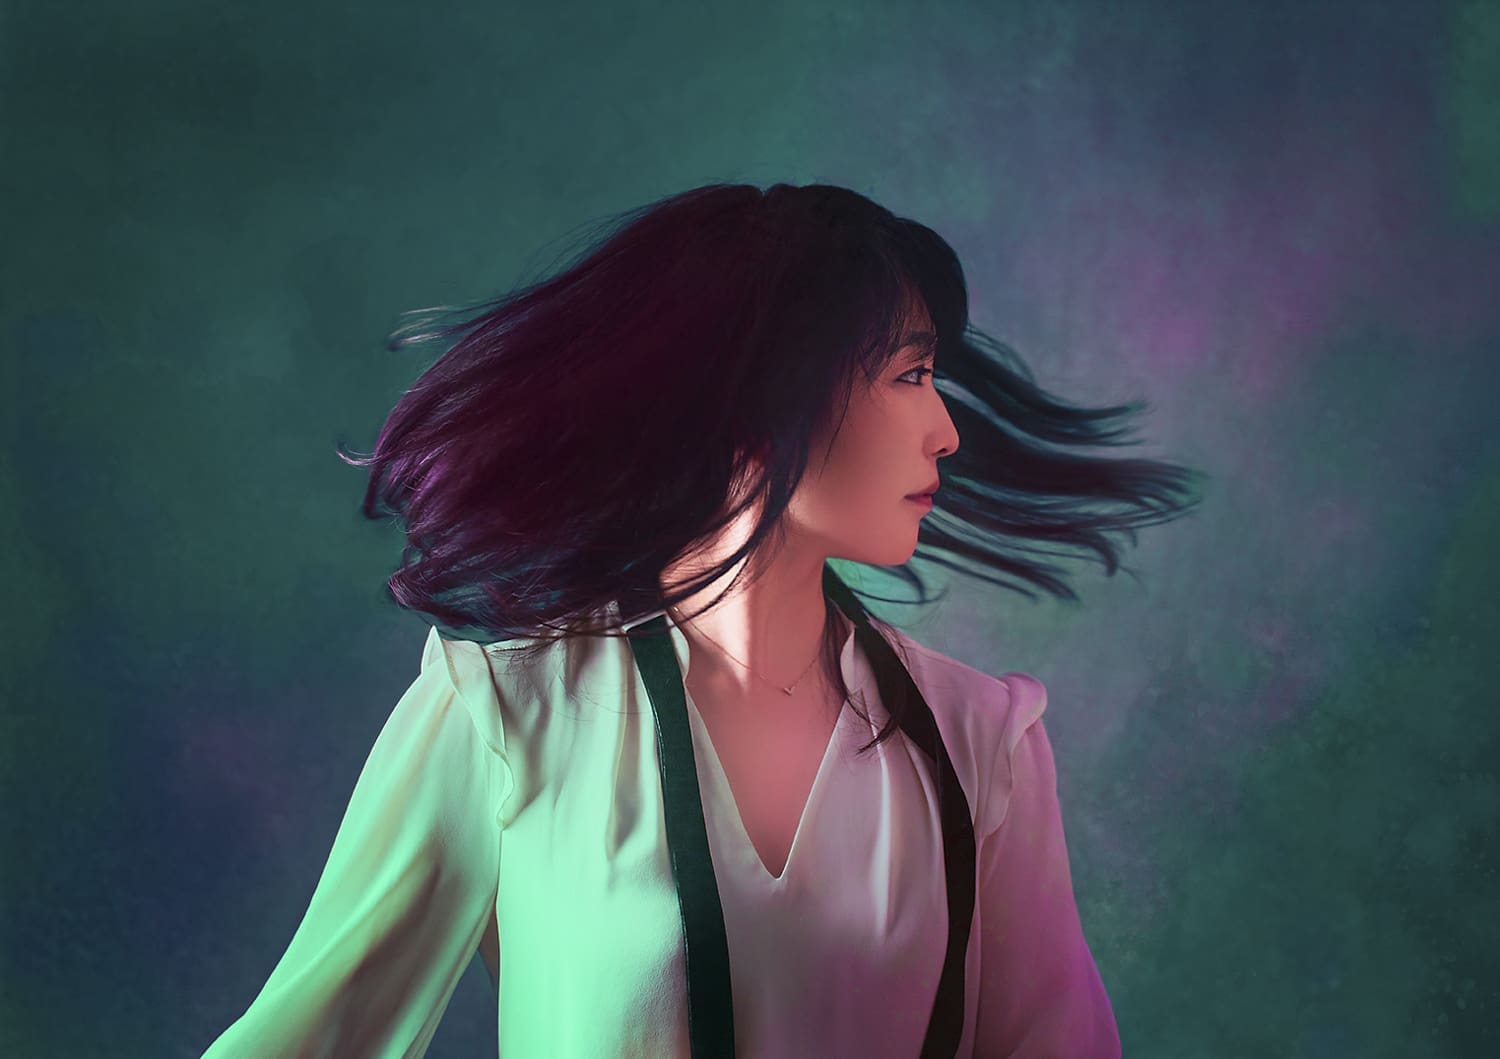 Claire Huangci seitlich vor einem grün-violett-schimmernden Hintergrund